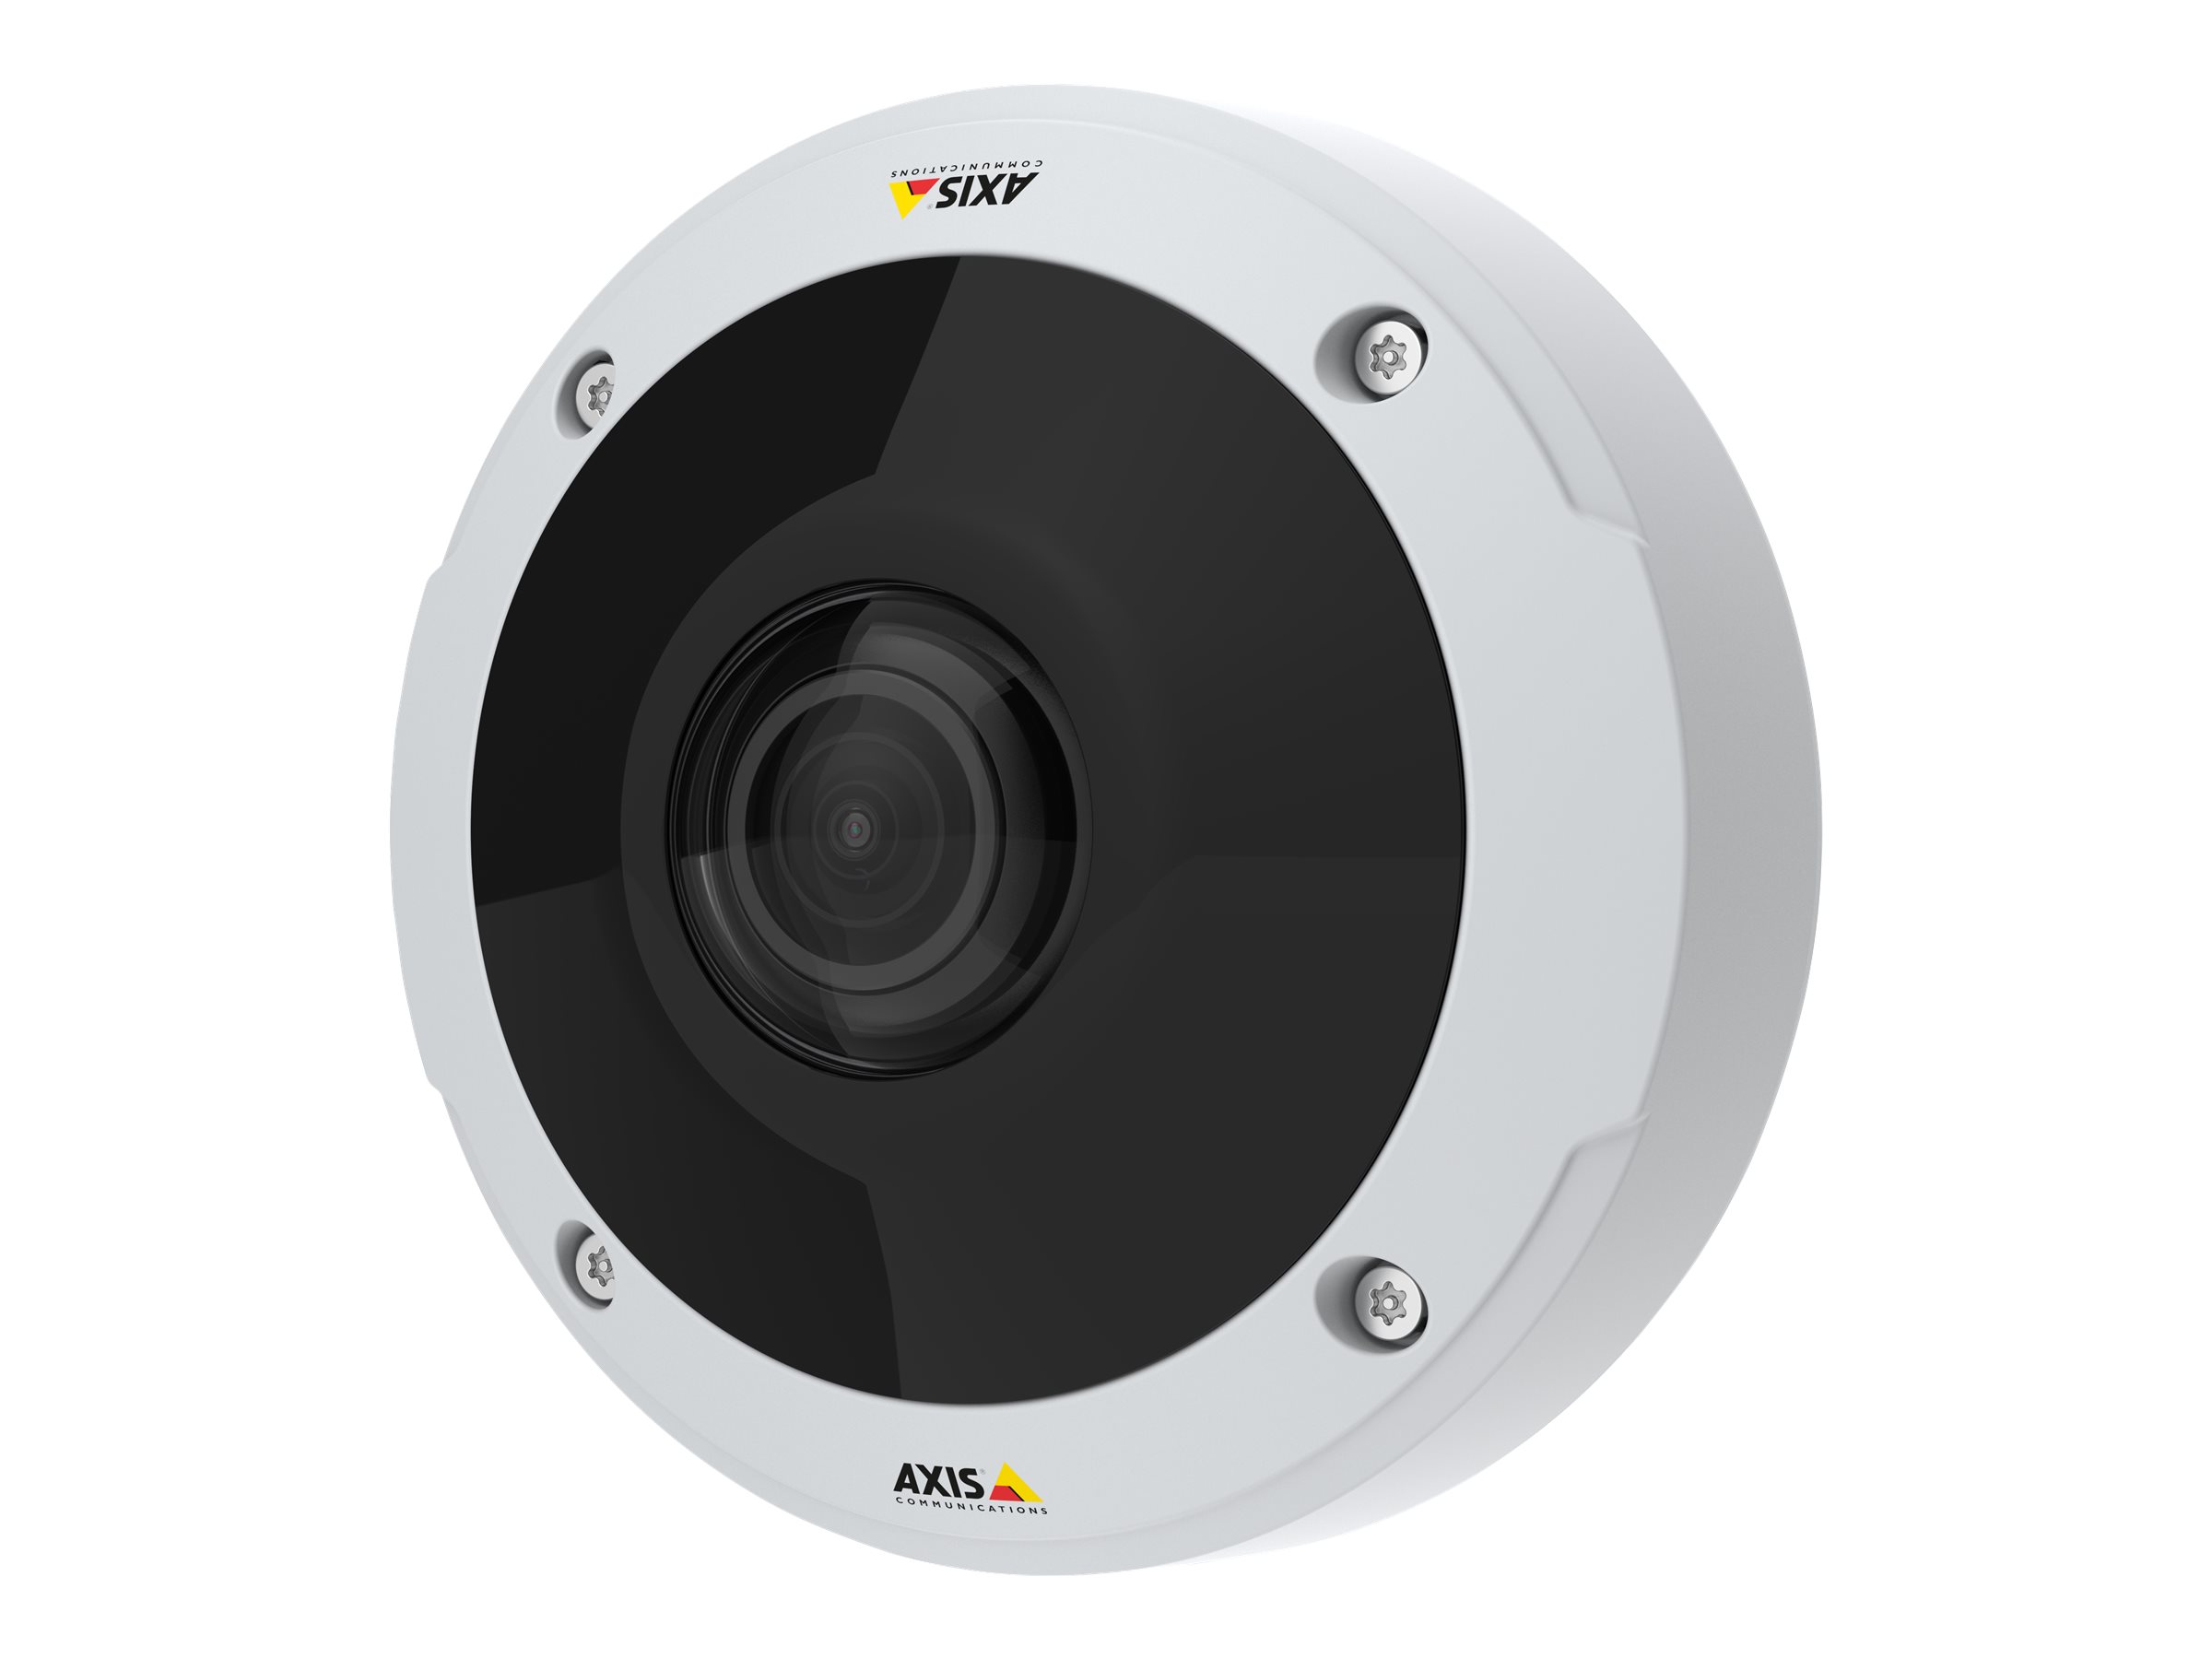 AXIS M3058-PLVE Network Camera - Netzwerk-Überwachungskamera - Kuppel - Außenbereich - staubdicht/wasserdicht/vandalismusresistent - Farbe (Tag&Nacht) - 12 MP - 3584 x 2668 - 1080p - feste Irisblende - feste Brennweite - HDMI - LAN 10/100 - MJPEG, ...